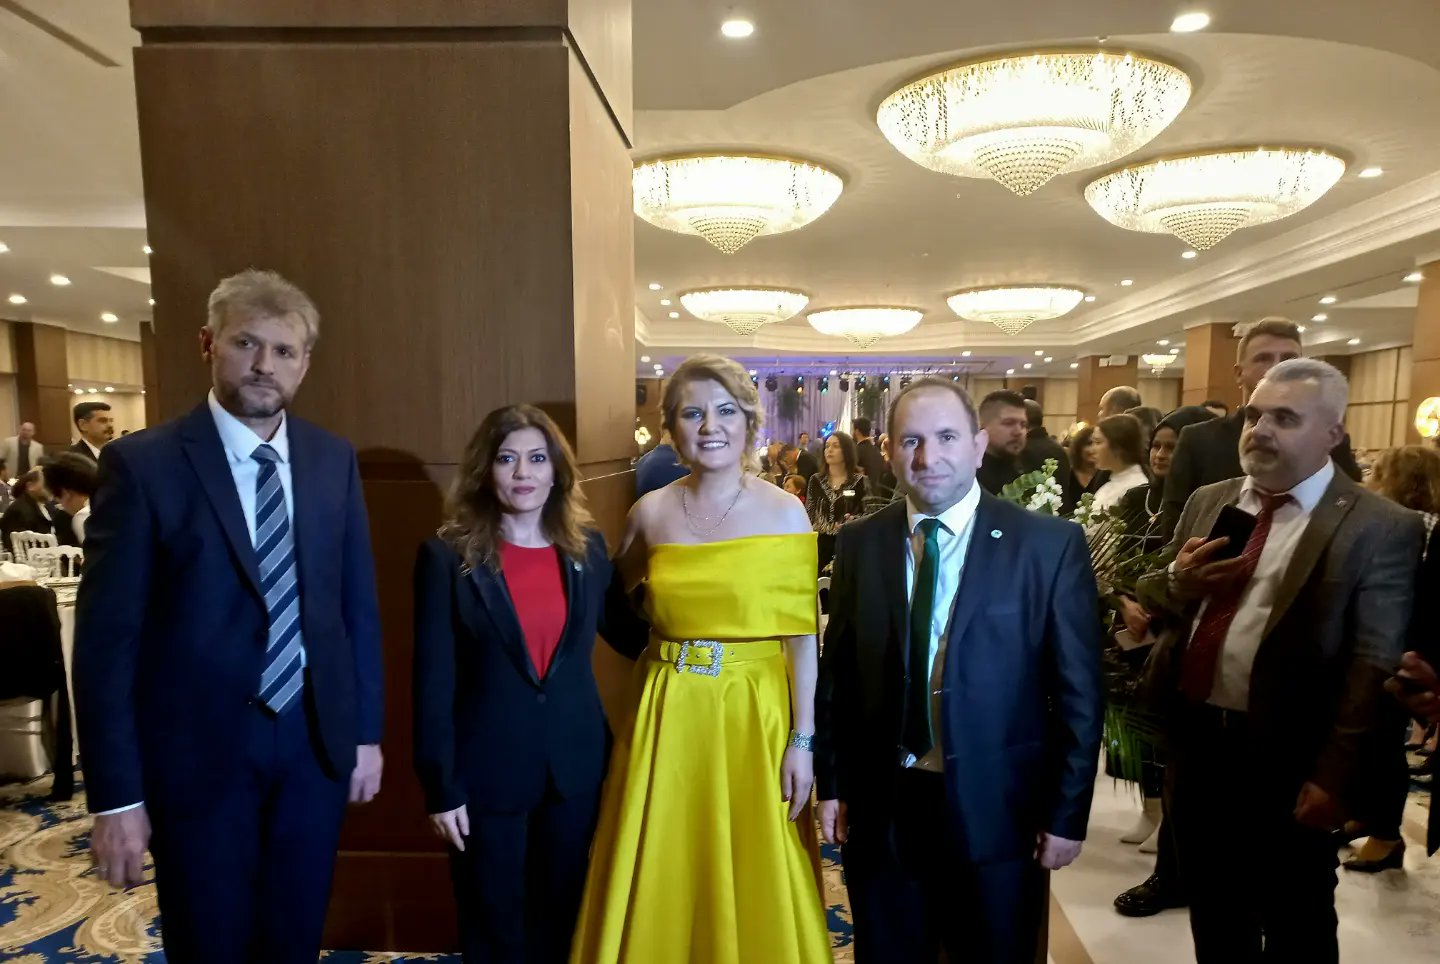 İl Başkanımız Serap Çakır ile Fatma Kaplan Hürriyet'in oğlunun sünnet düğününe katıldık